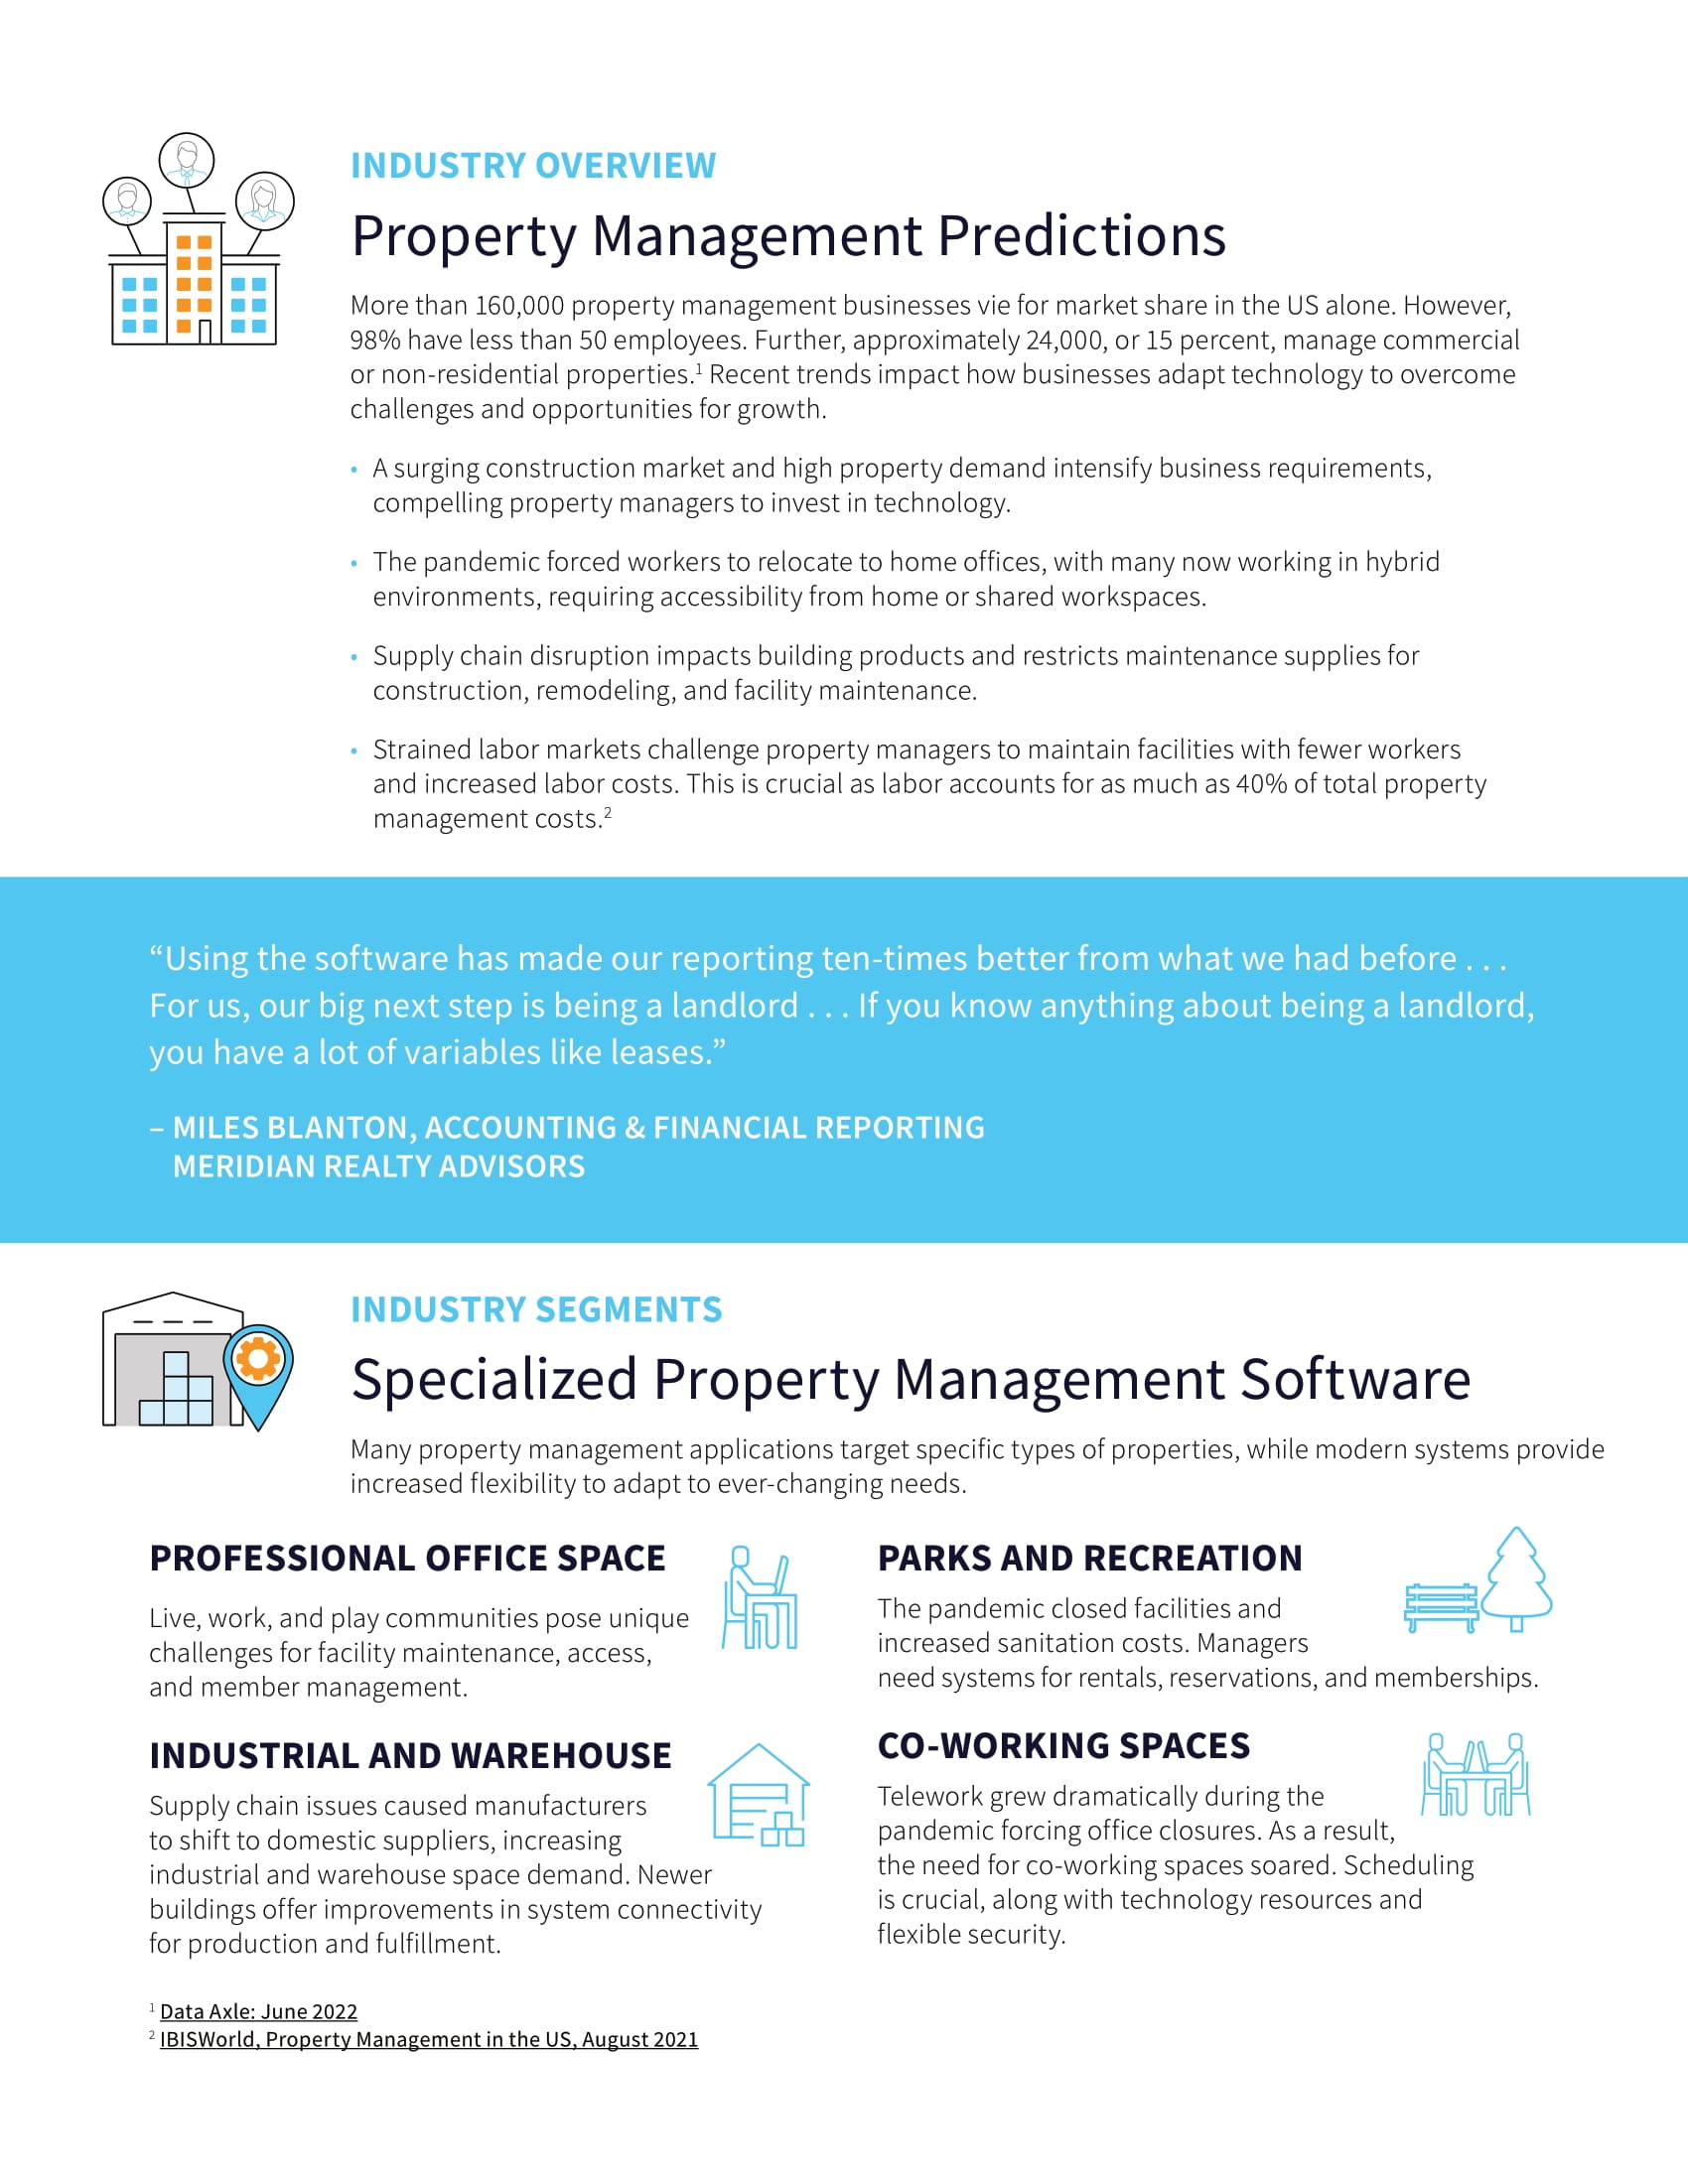 Mieux servir les locataires avec un système de gestion immobilière moderne et basé sur le cloud, page 1